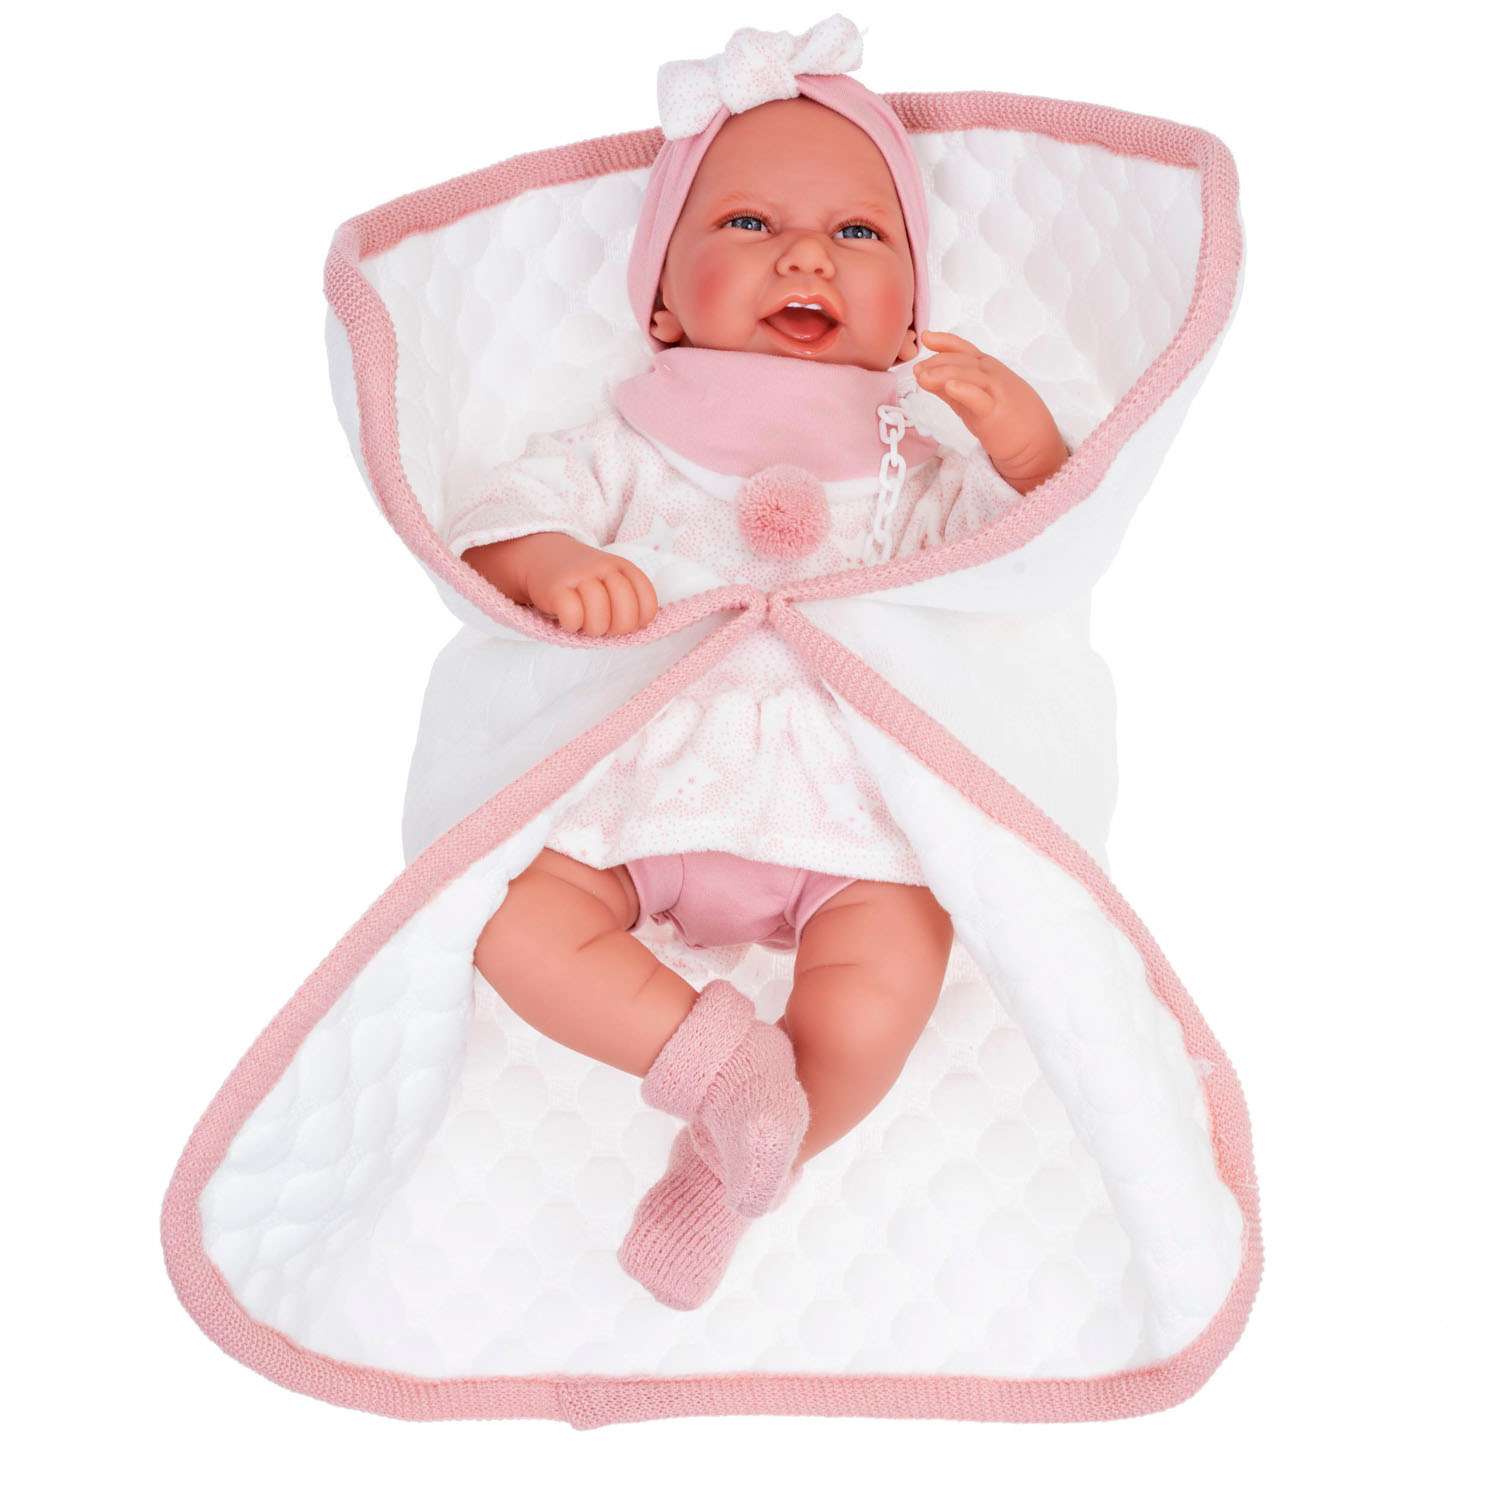 Кукла младенец Antonio Juan Реборн Пола в розовом 40 см мягконабивная 3304 - фото 1